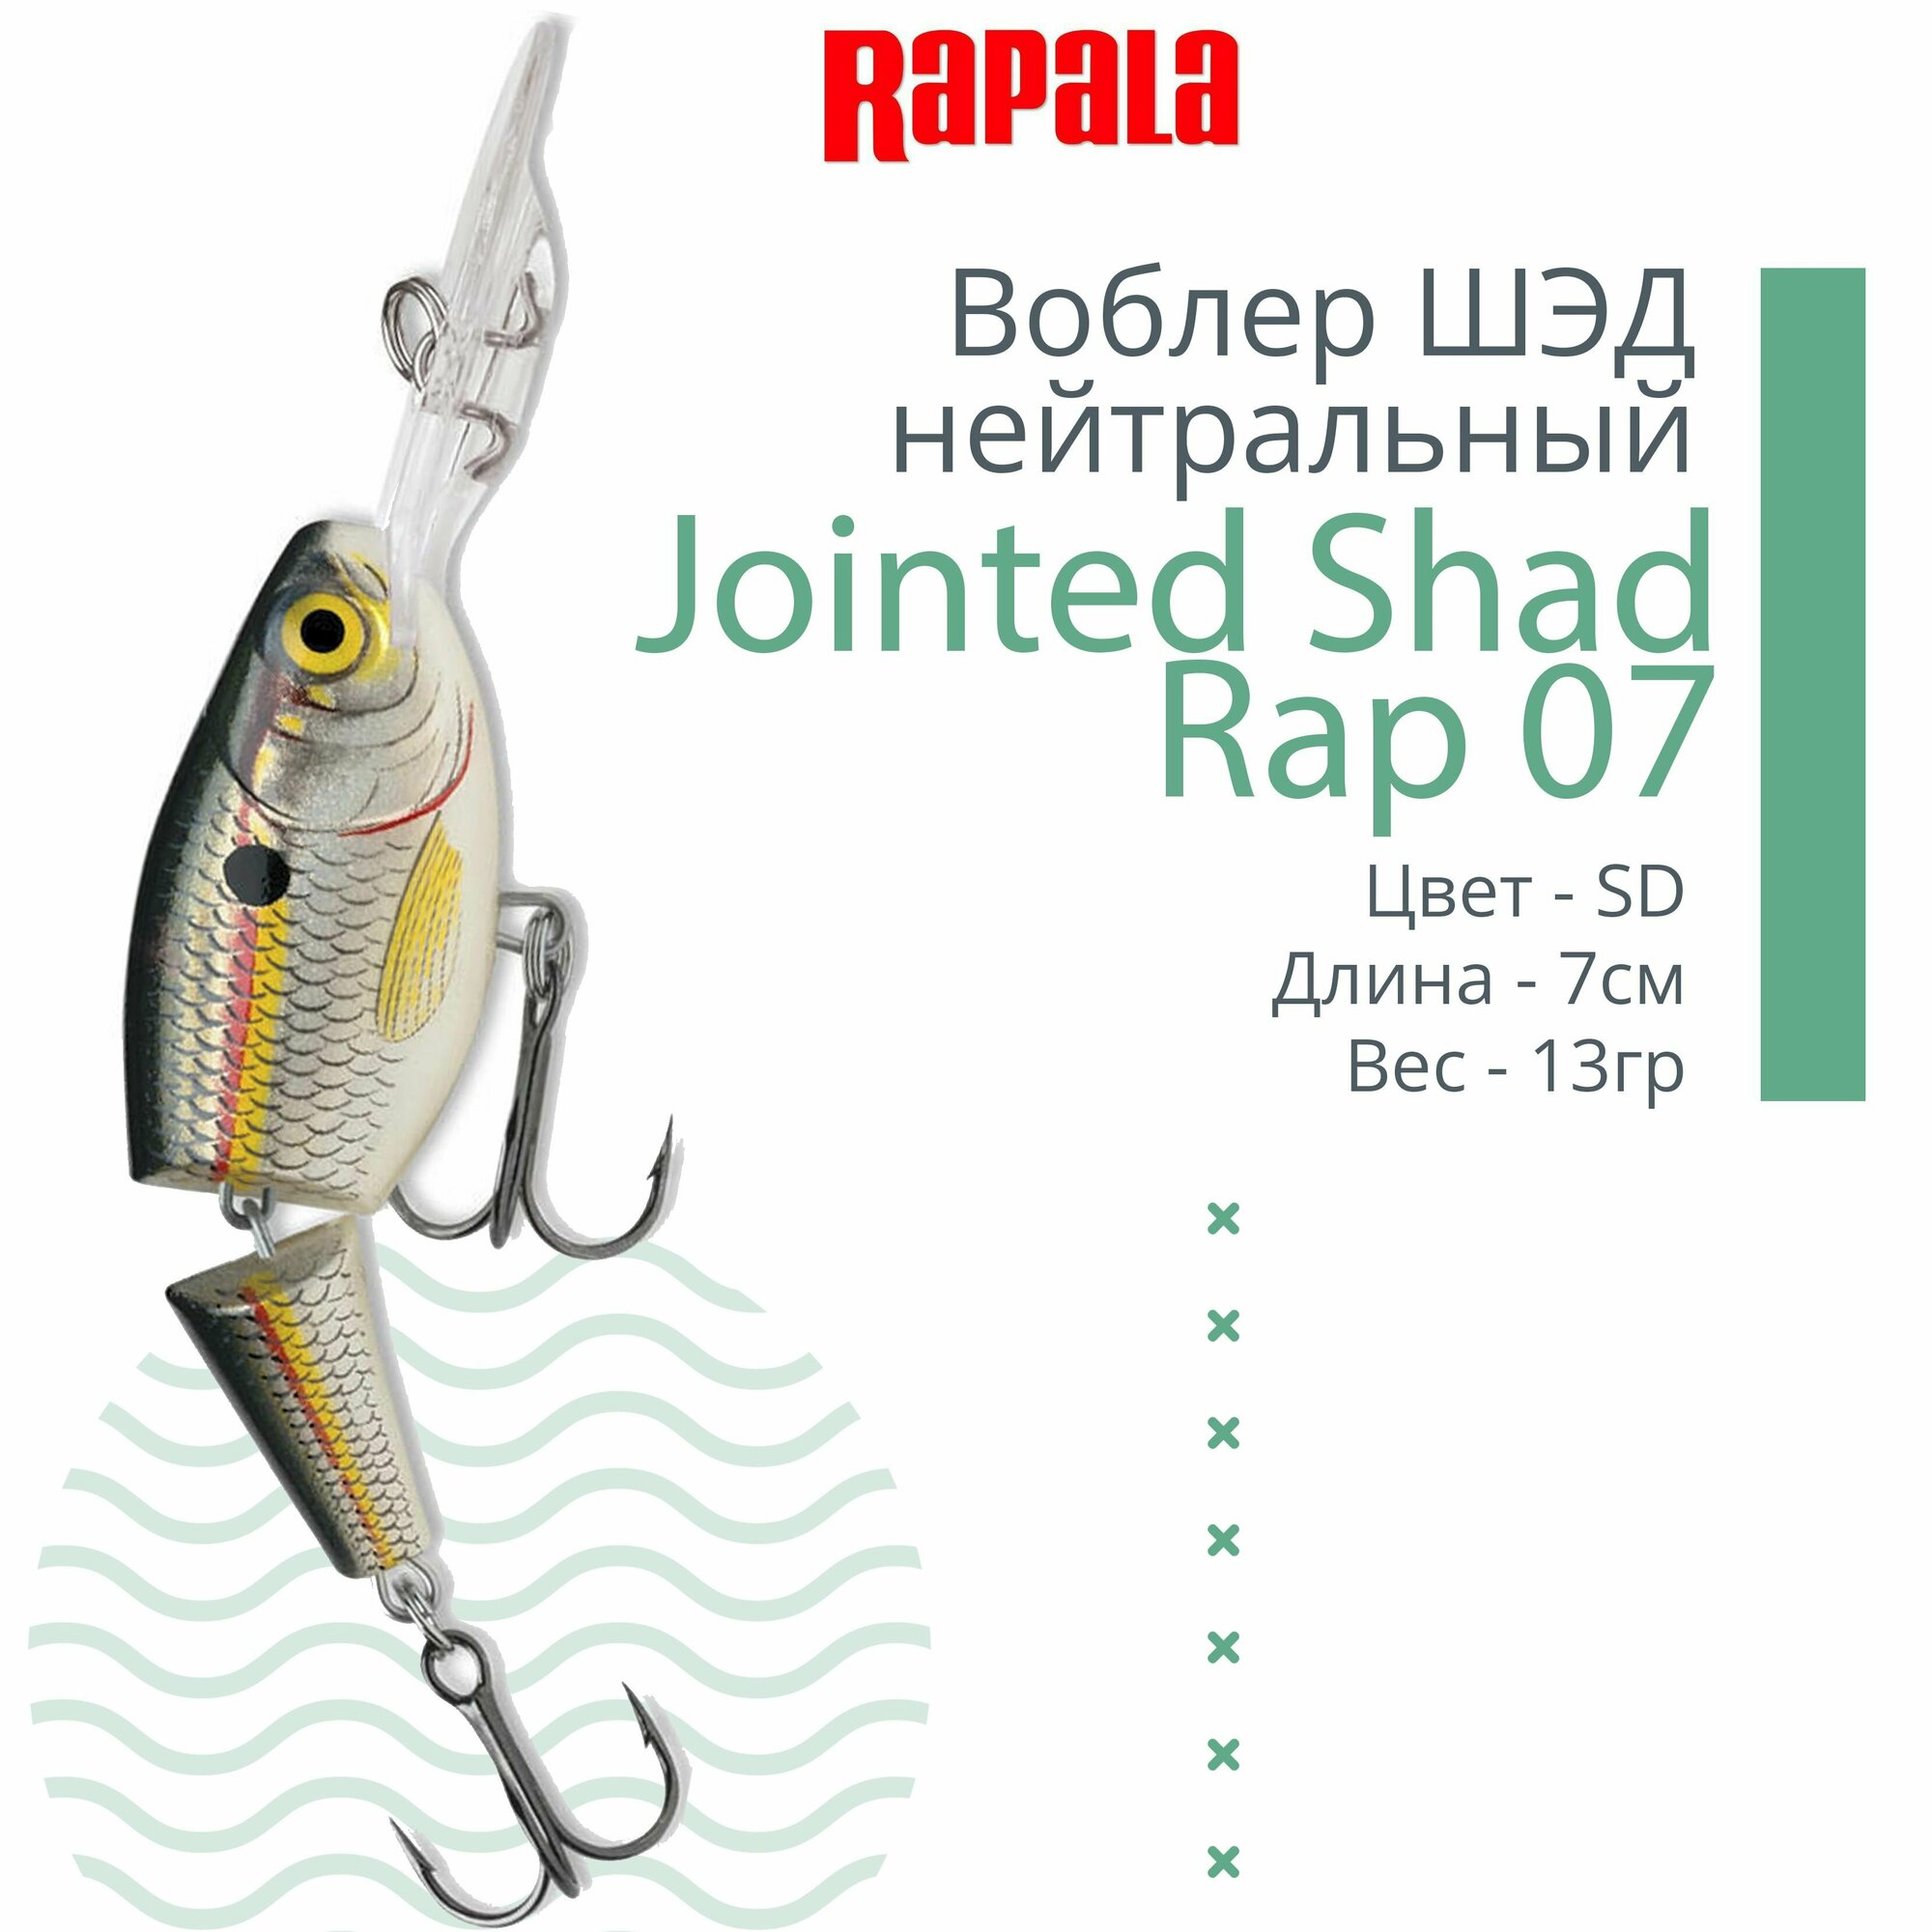 Воблер для рыбалки RAPALA Jointed Shad Rap 07, 7см, 13гр, цвет SD, нейтральный